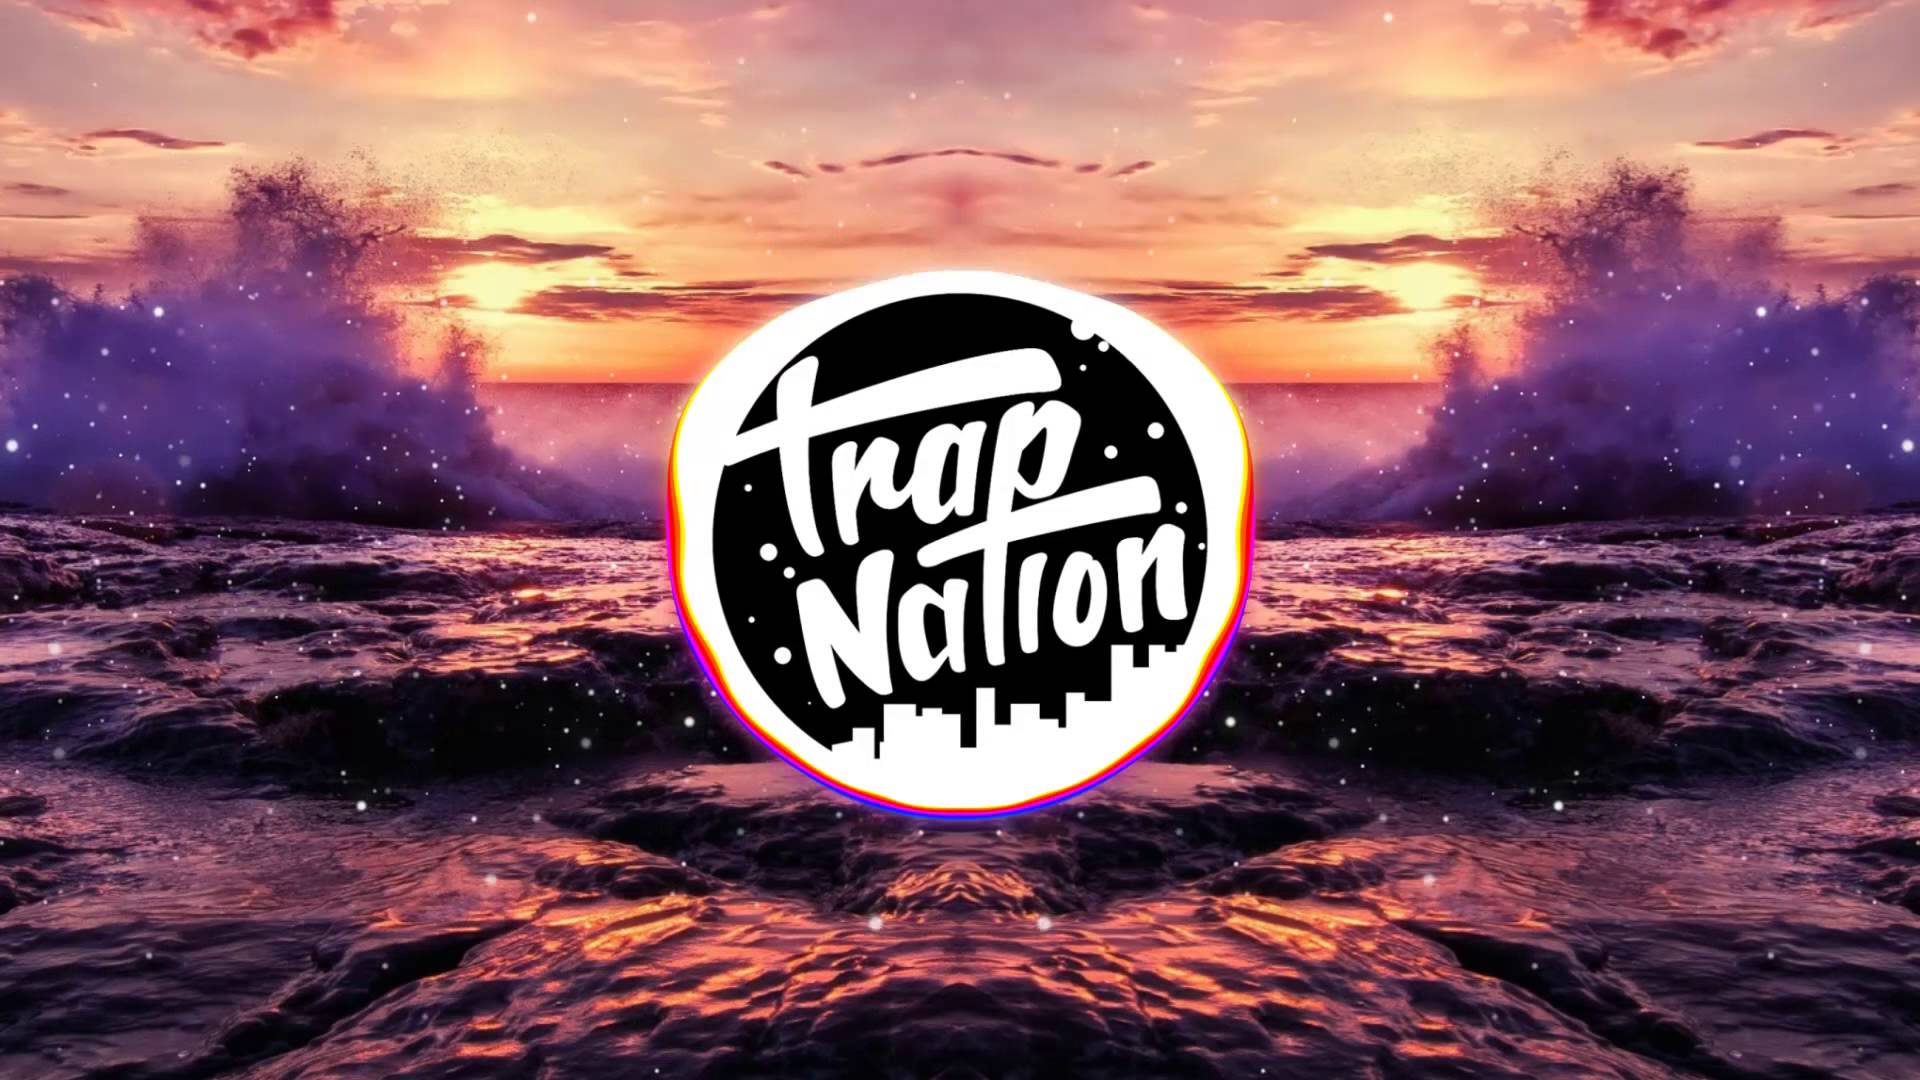 Trap Nation - HD Wallpaper 